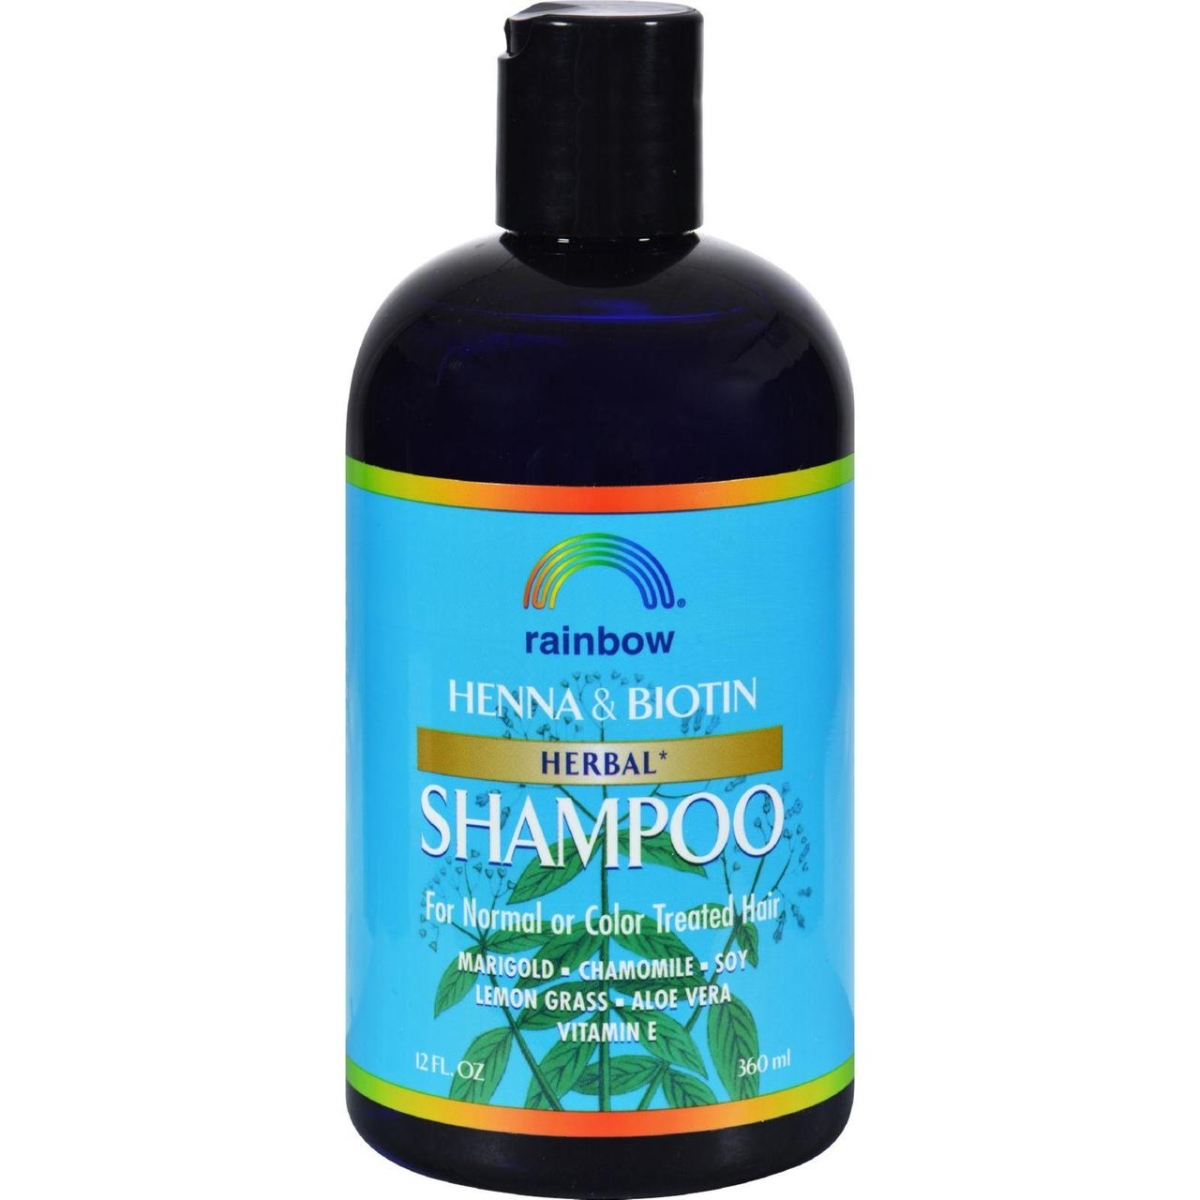 Hg0298703 12 Fl Oz Organic Herbal Henna Boitin Shampoo